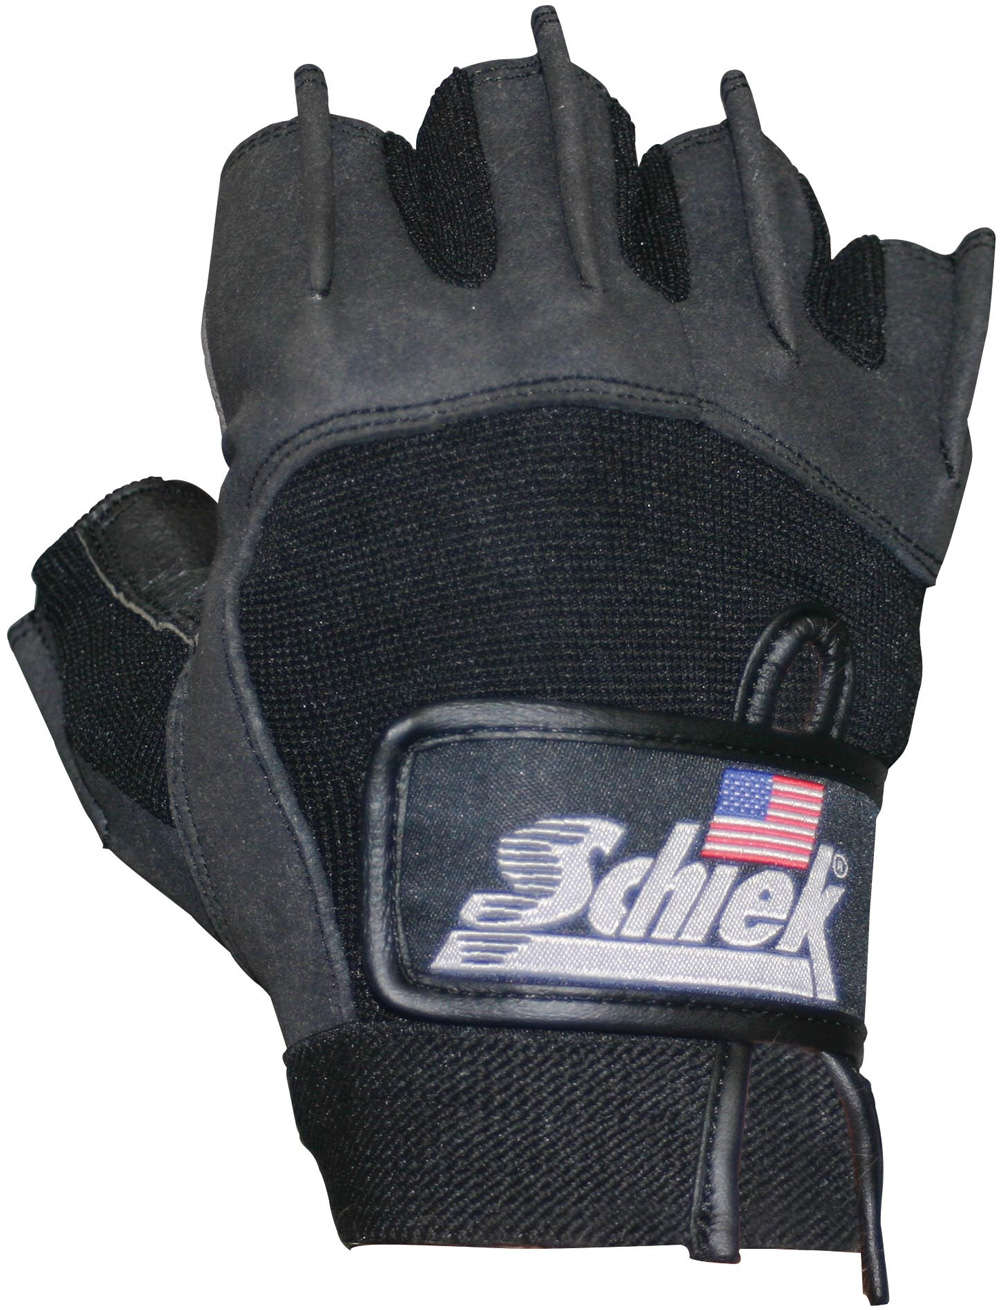 Schiek Platinum Lifting Gloves Model 715 BLACK